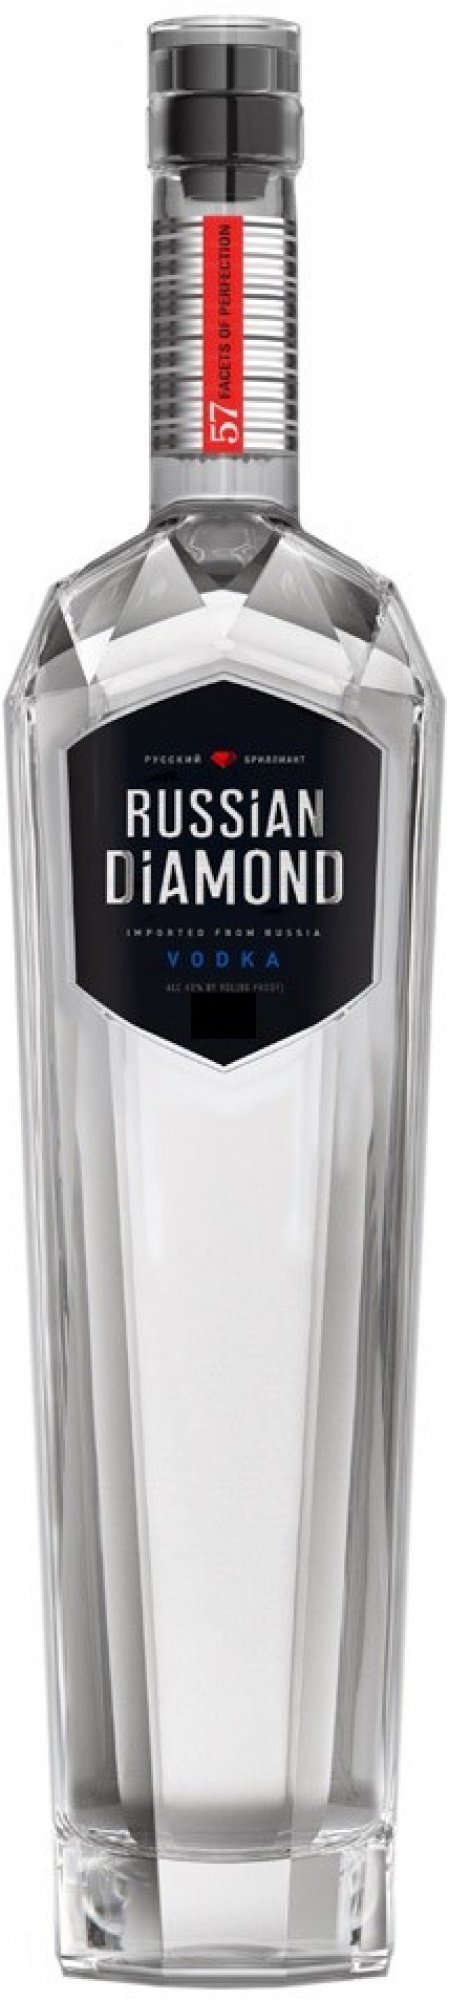 Russian Diamond 40% 0,7l